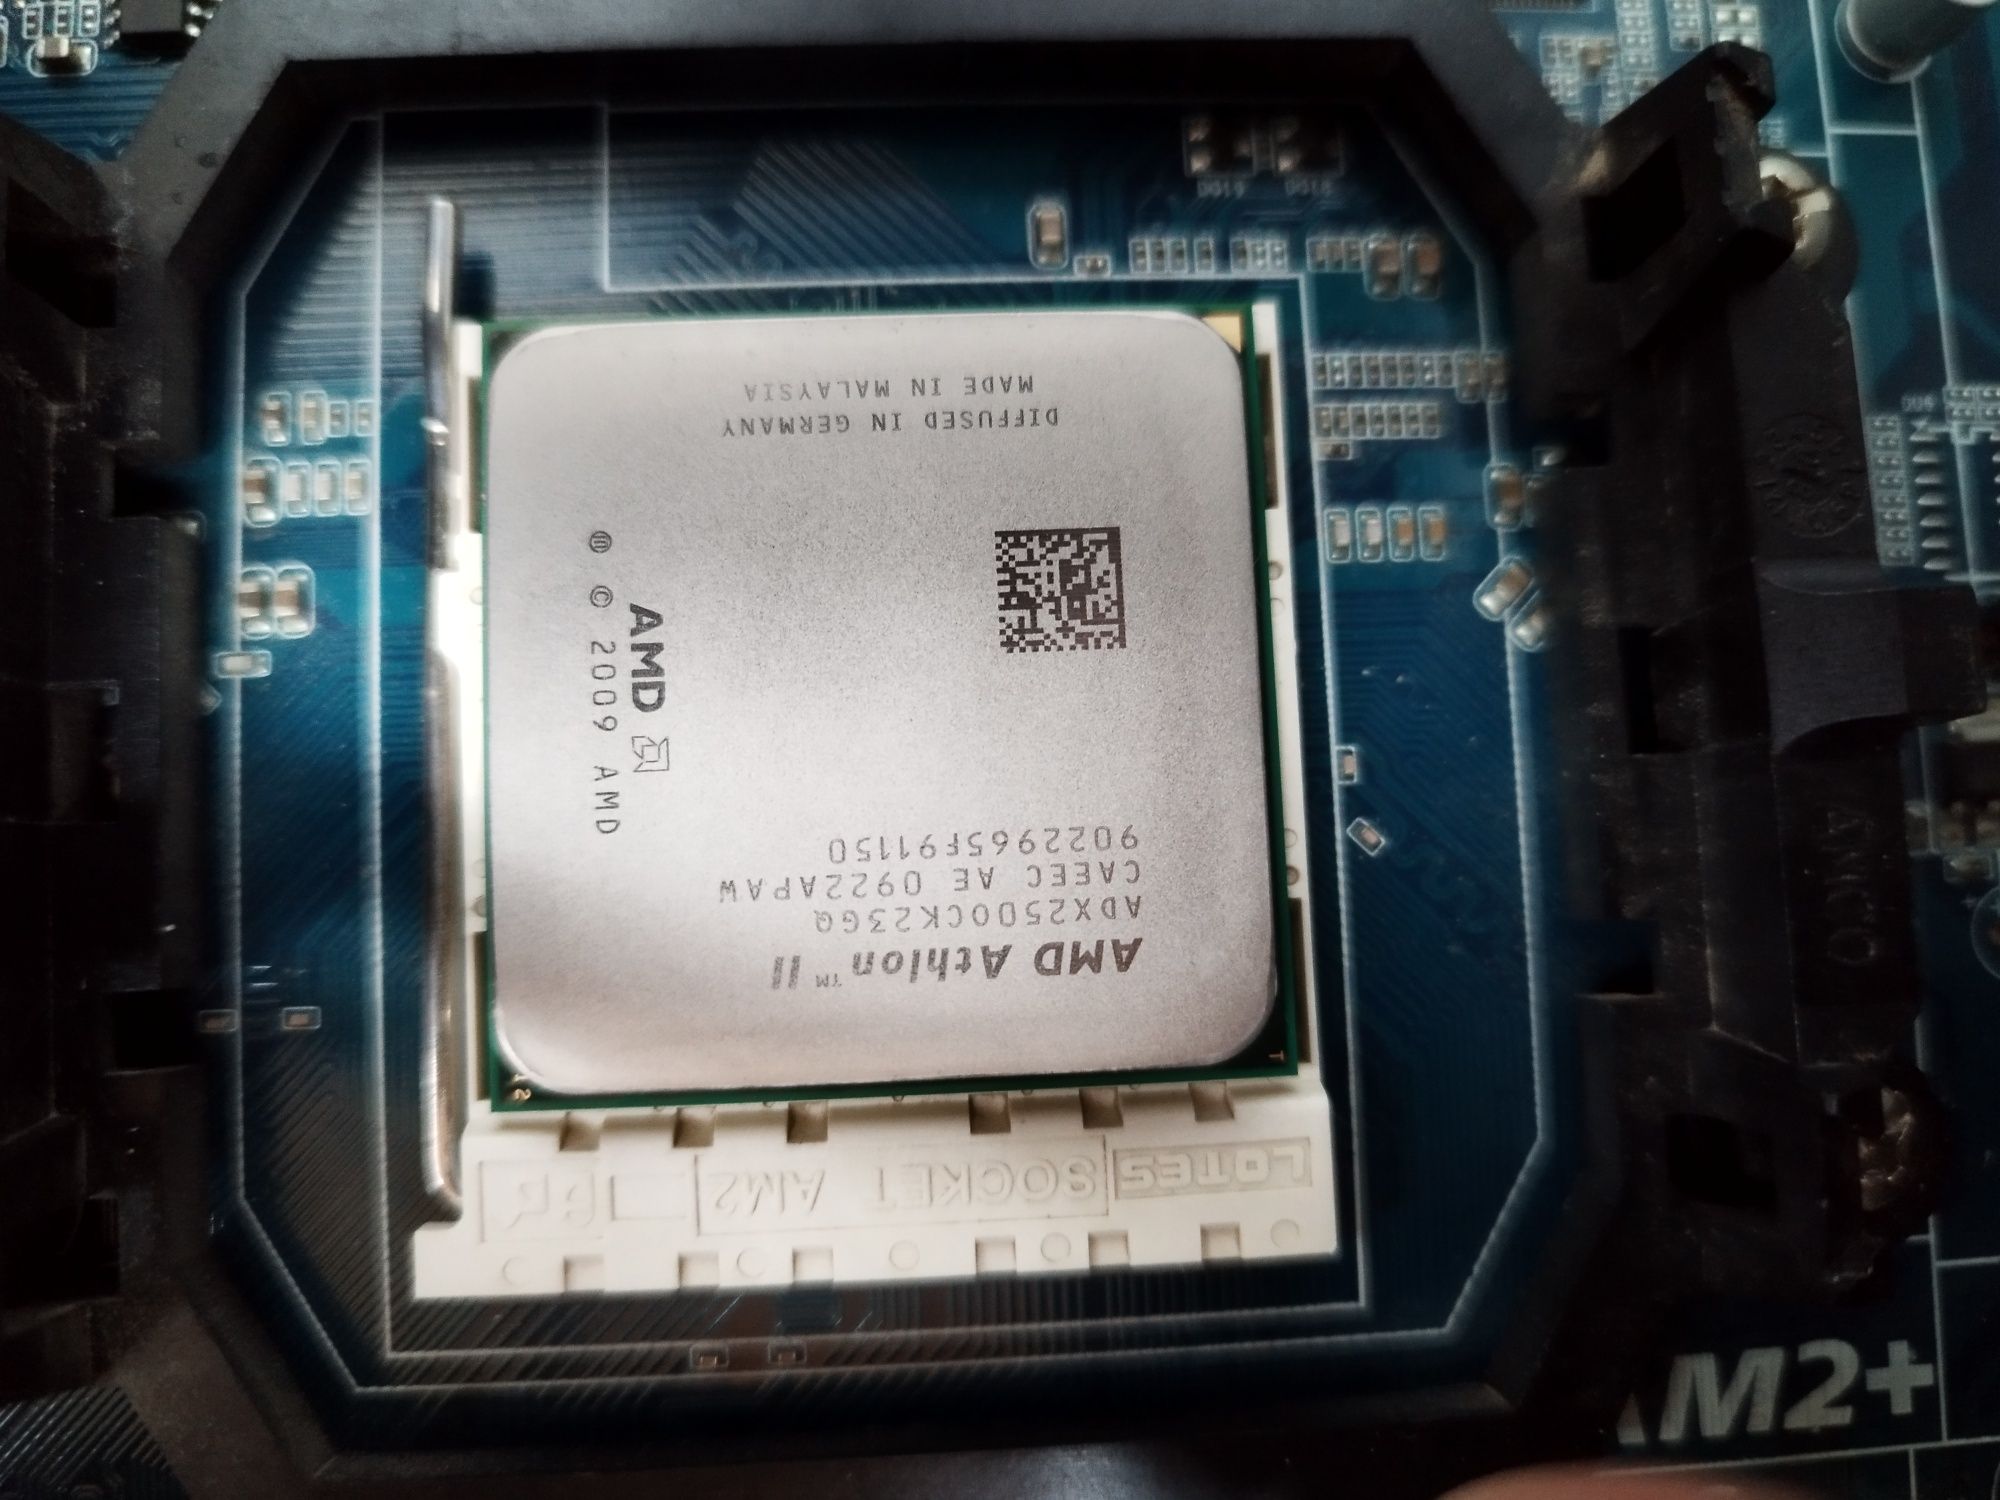 Kompyuter bloki AMD DDR 2 holati yangi plata oʻzi ham soturaman